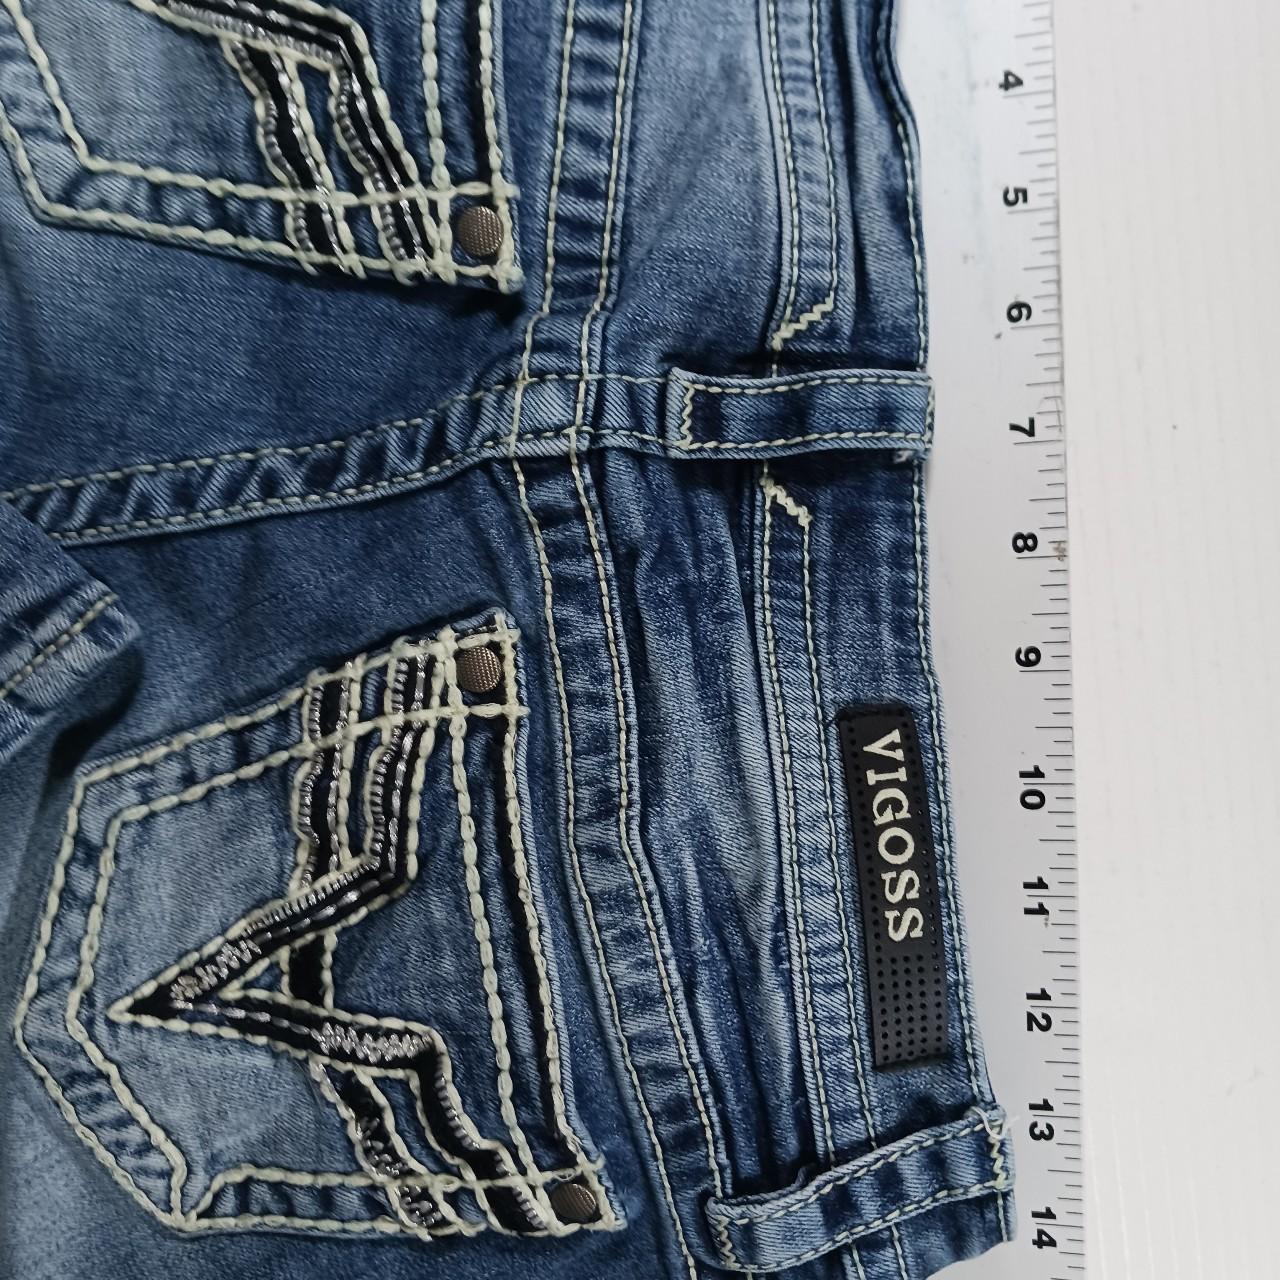 Vigoss women's jeans capris size 12 EUC - Depop